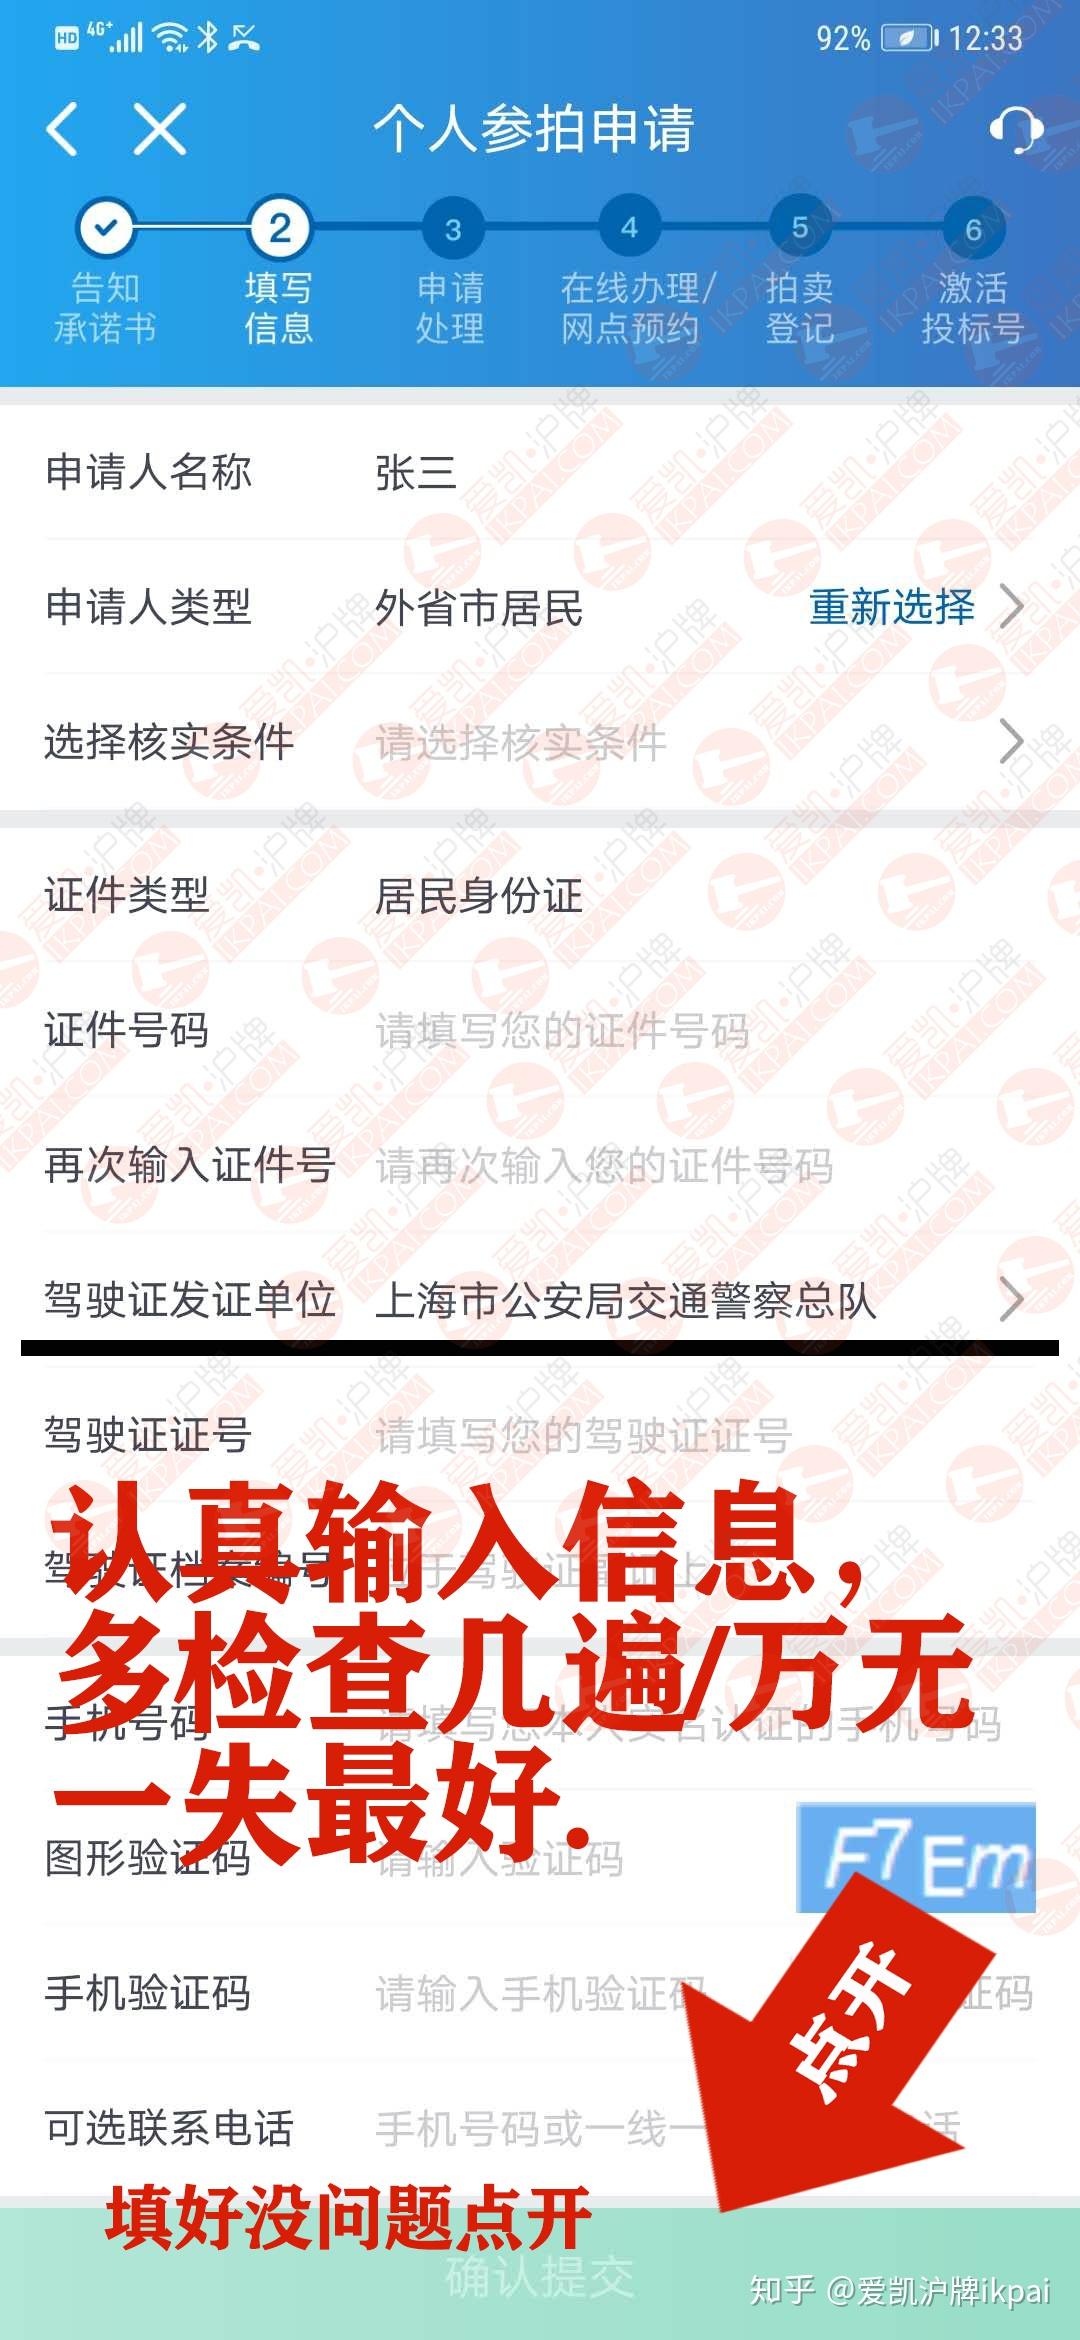 上海拍牌流程个人拍牌(申请+登记+流程+付款) - 上海慢慢看